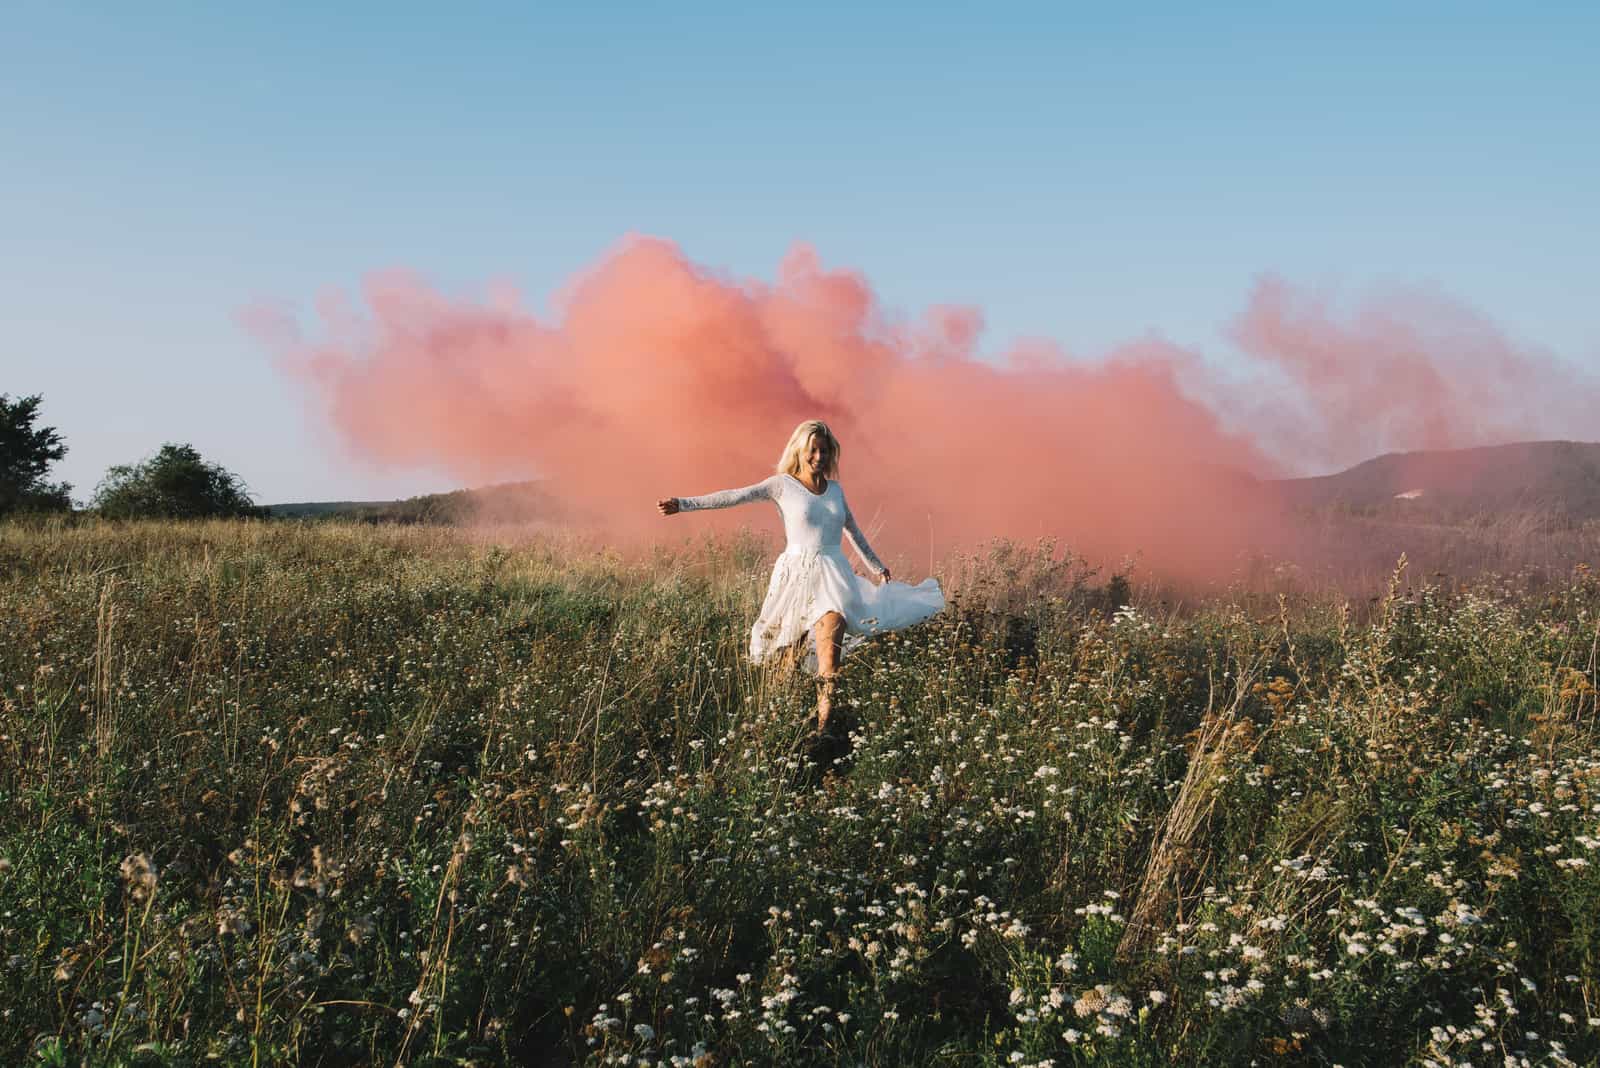 donna in campo con fumo rosa